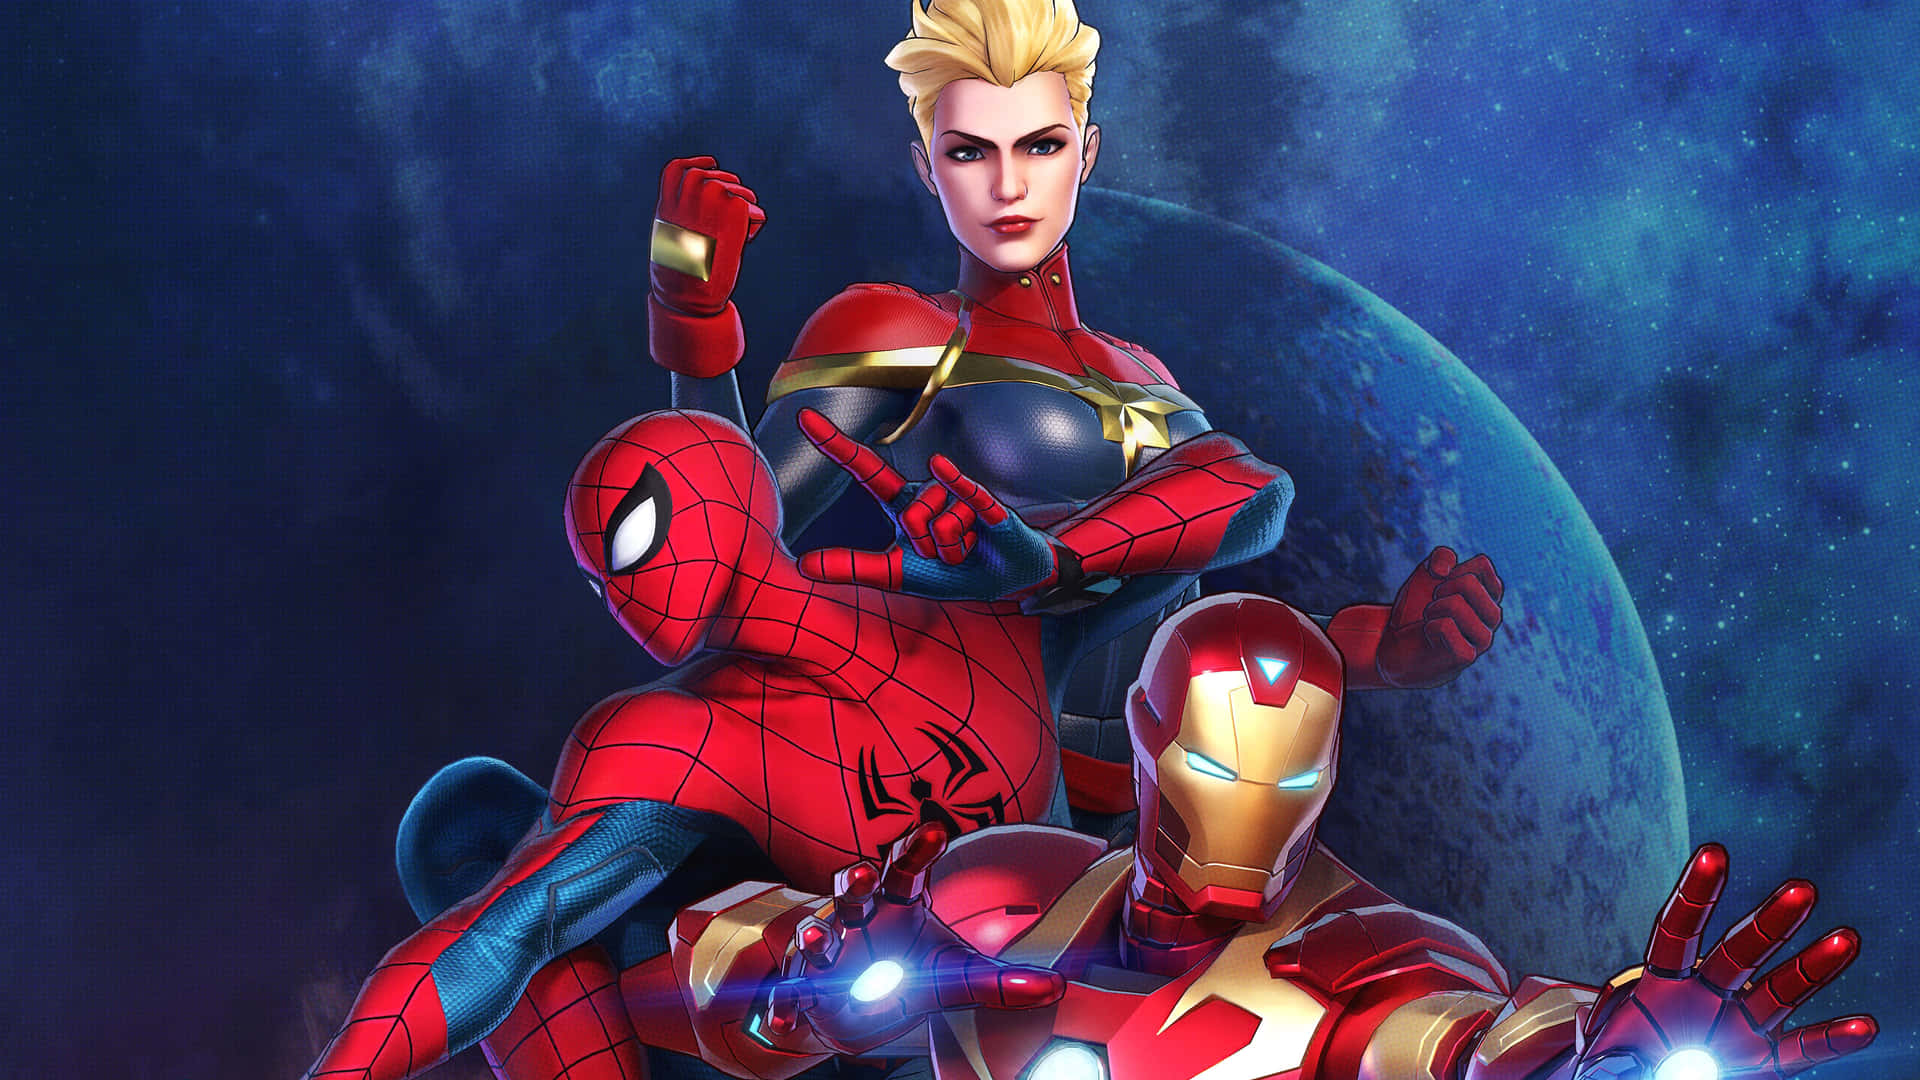 Spiderman Og Iron Man Forenes For At Kæmpe For Retfærdigheden. Wallpaper